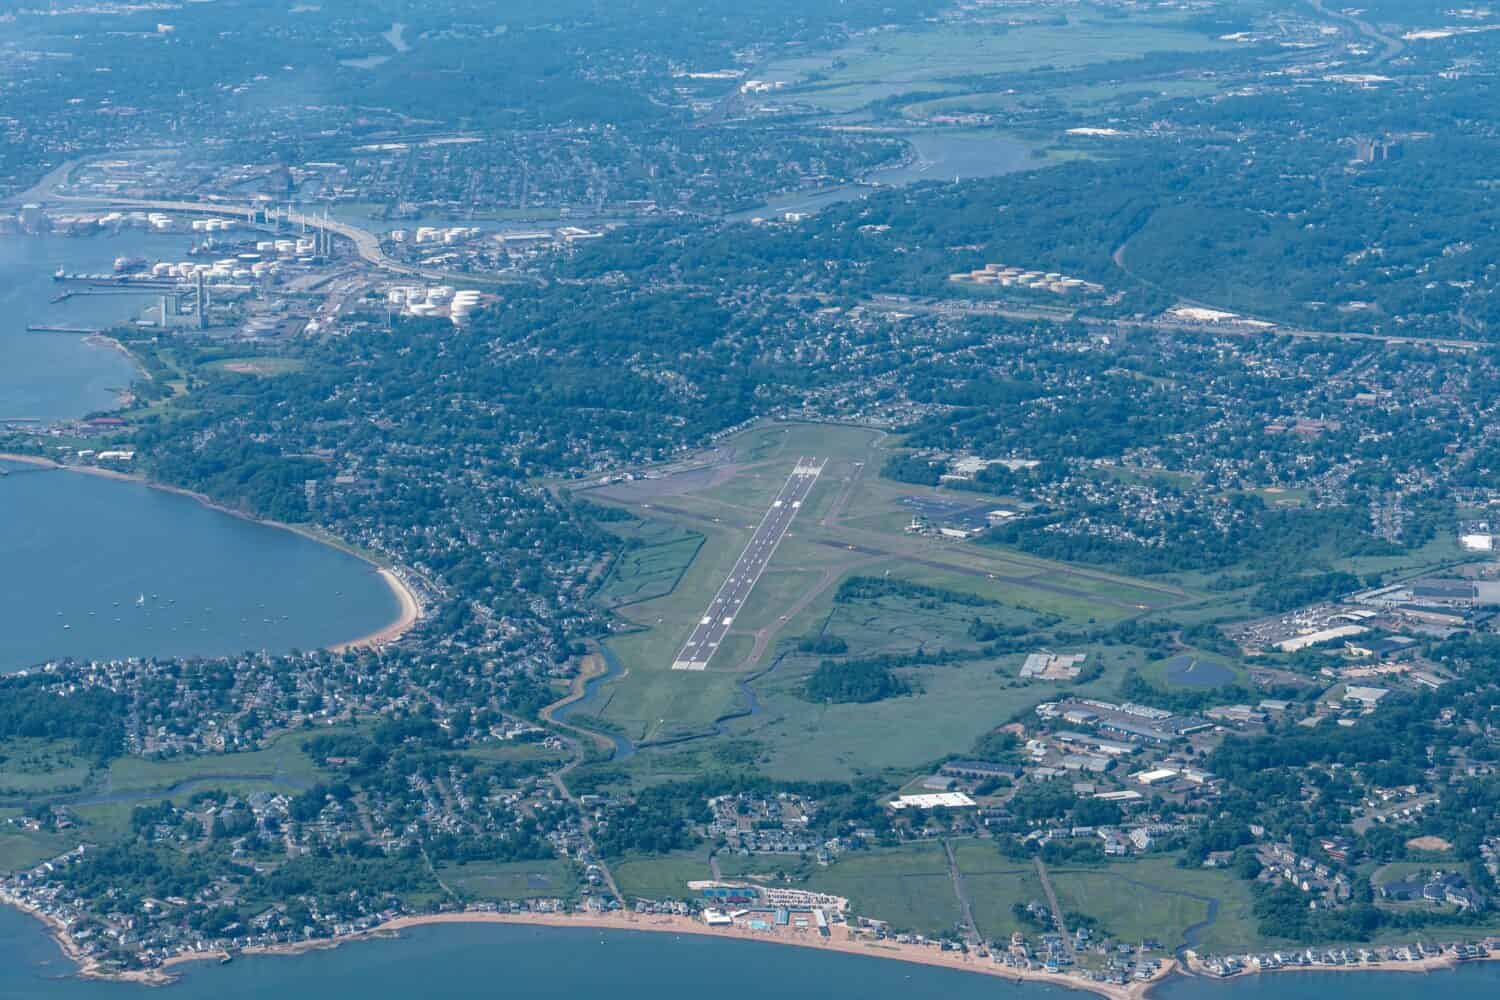 Sorvolando l'aeroporto di New Haven nel Connecticut.  Vista aerea dal Long Island Sound, che mostra una pista chiusa.